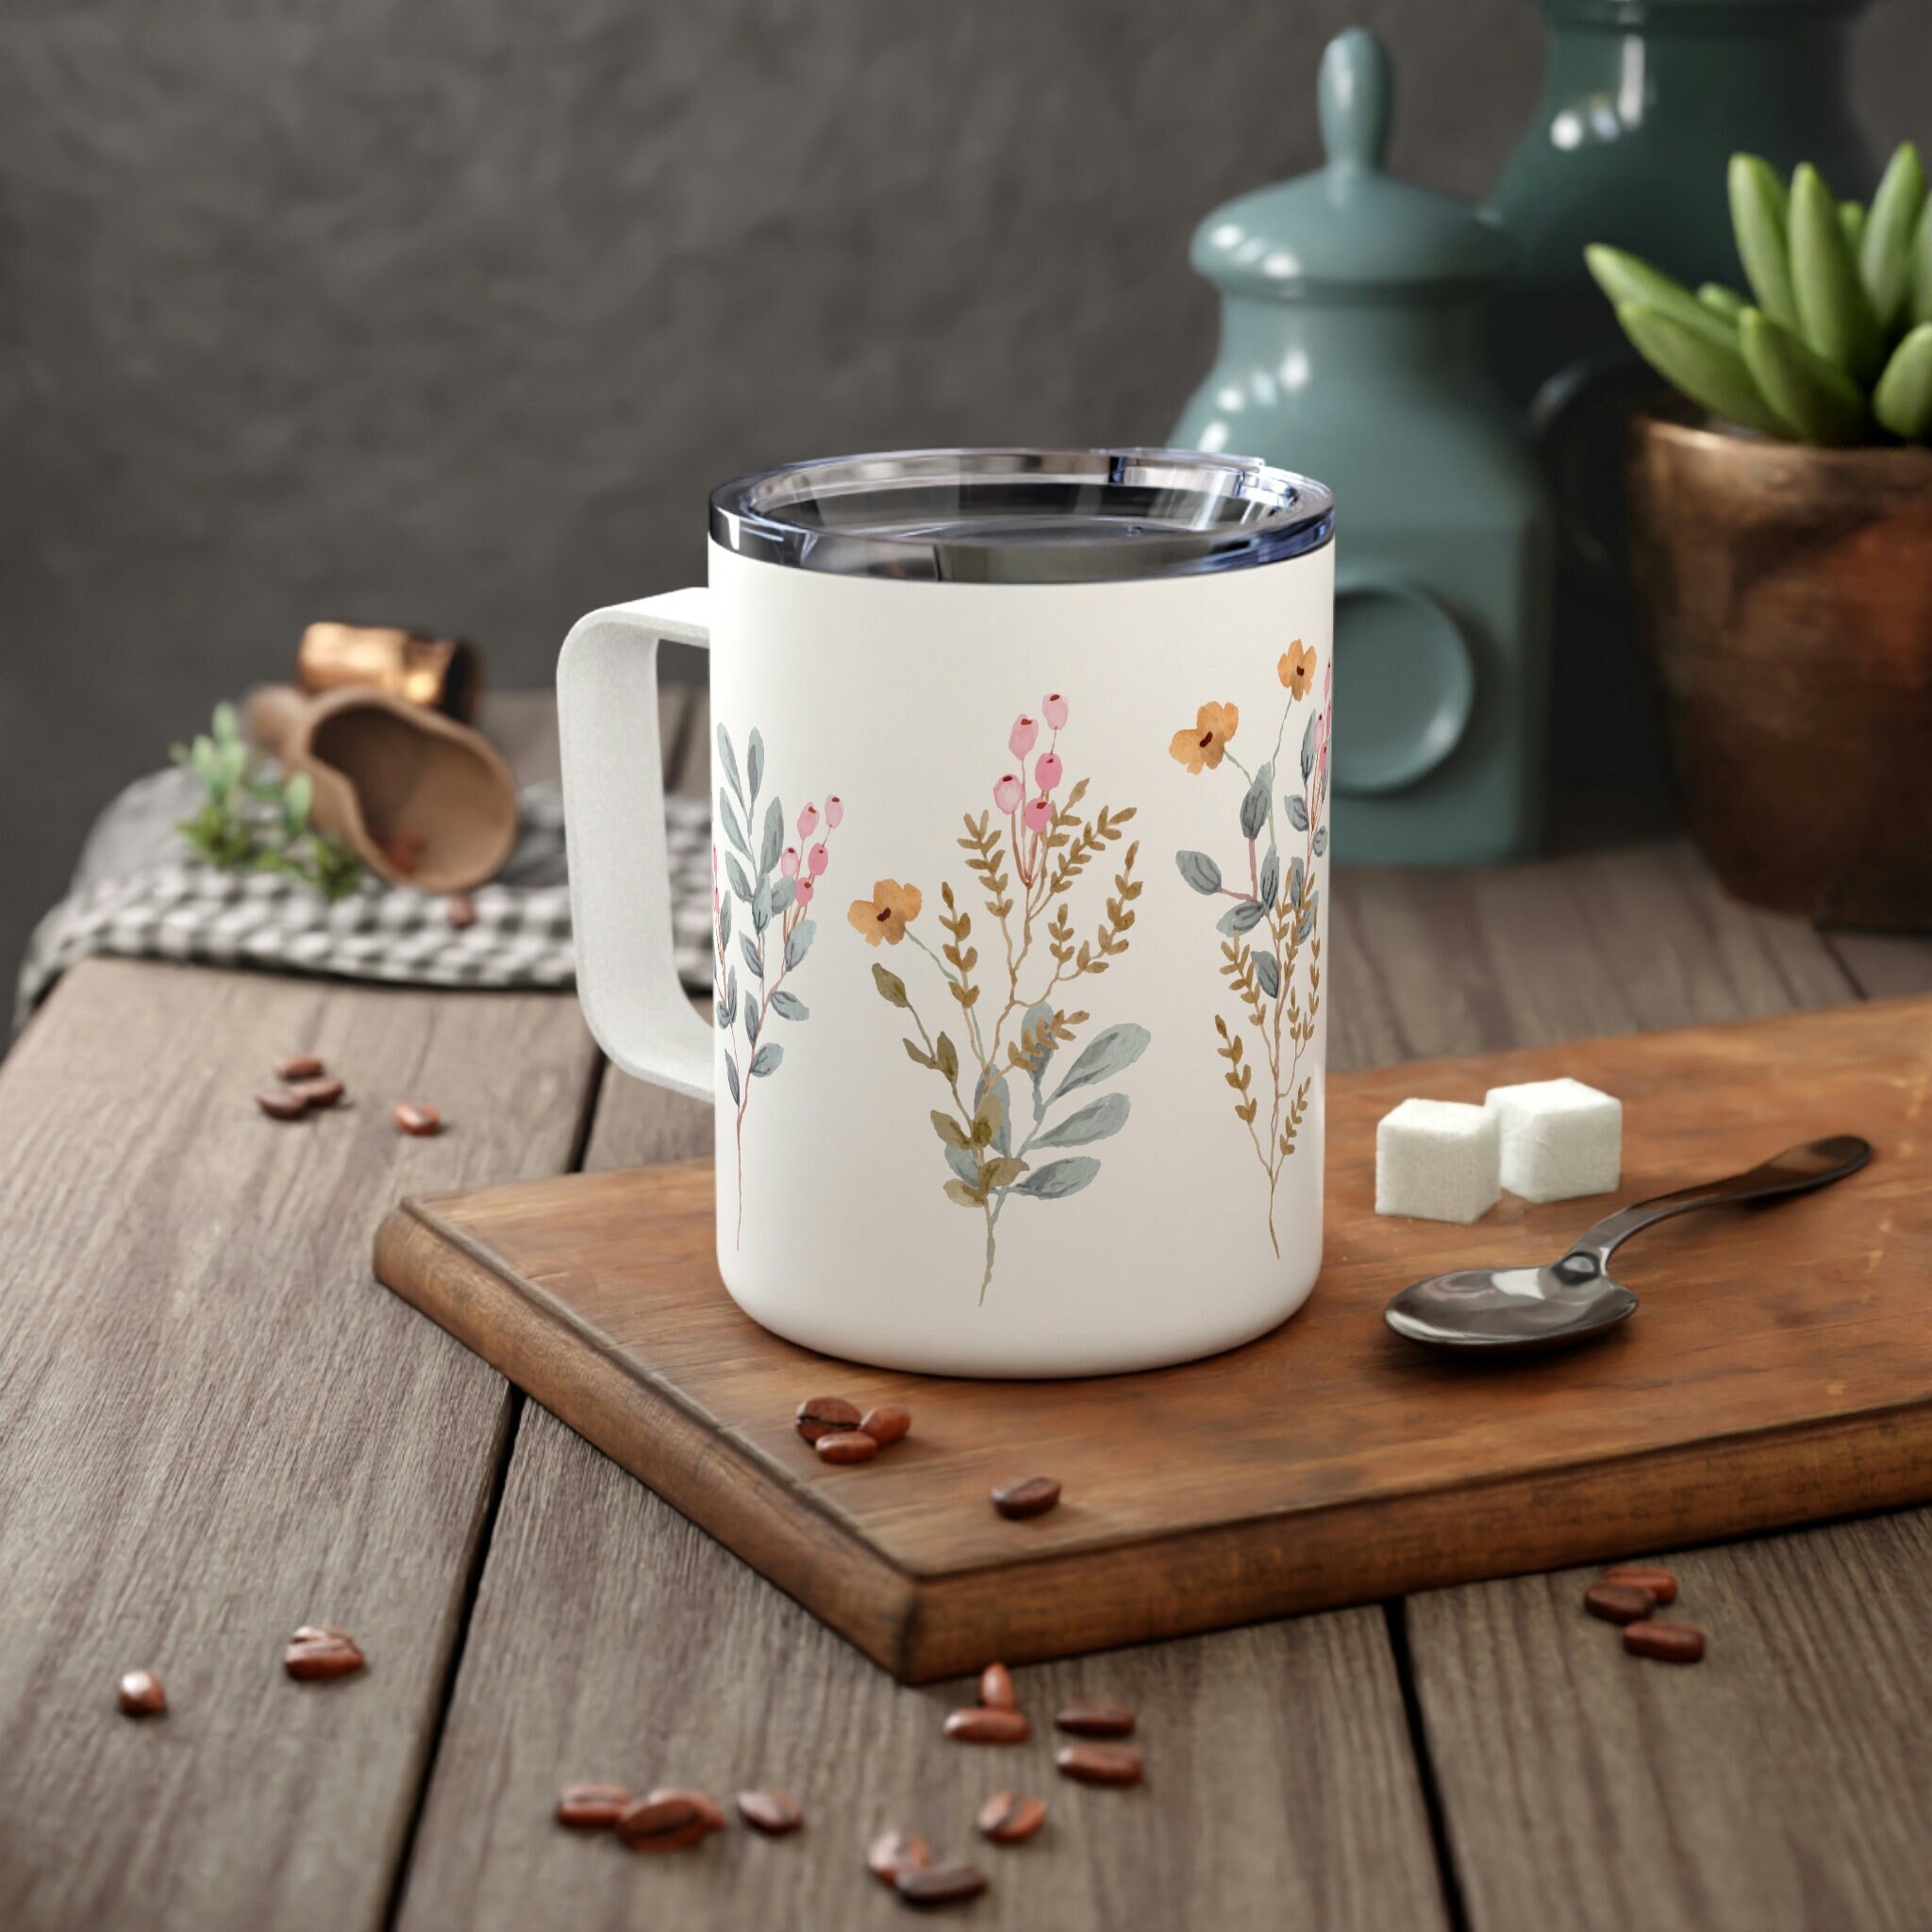 Impressions of Ireland White Ceramic Tulip Mug with Irish Scenes Design